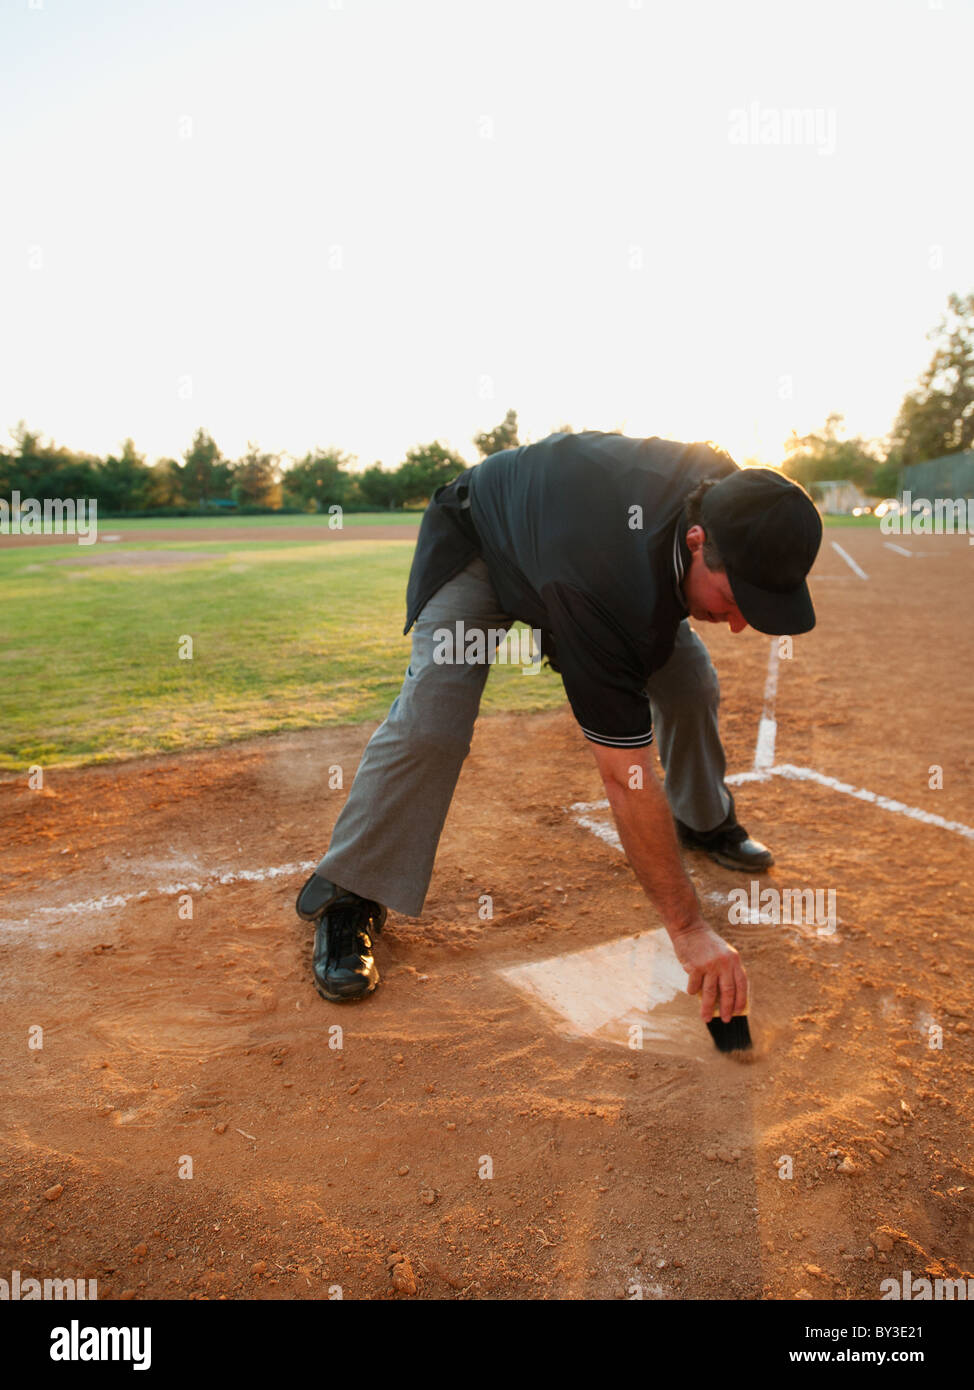 Stati Uniti, California, Ladera Ranch, uomo disegno in sabbia sul diamante di baseball Foto Stock